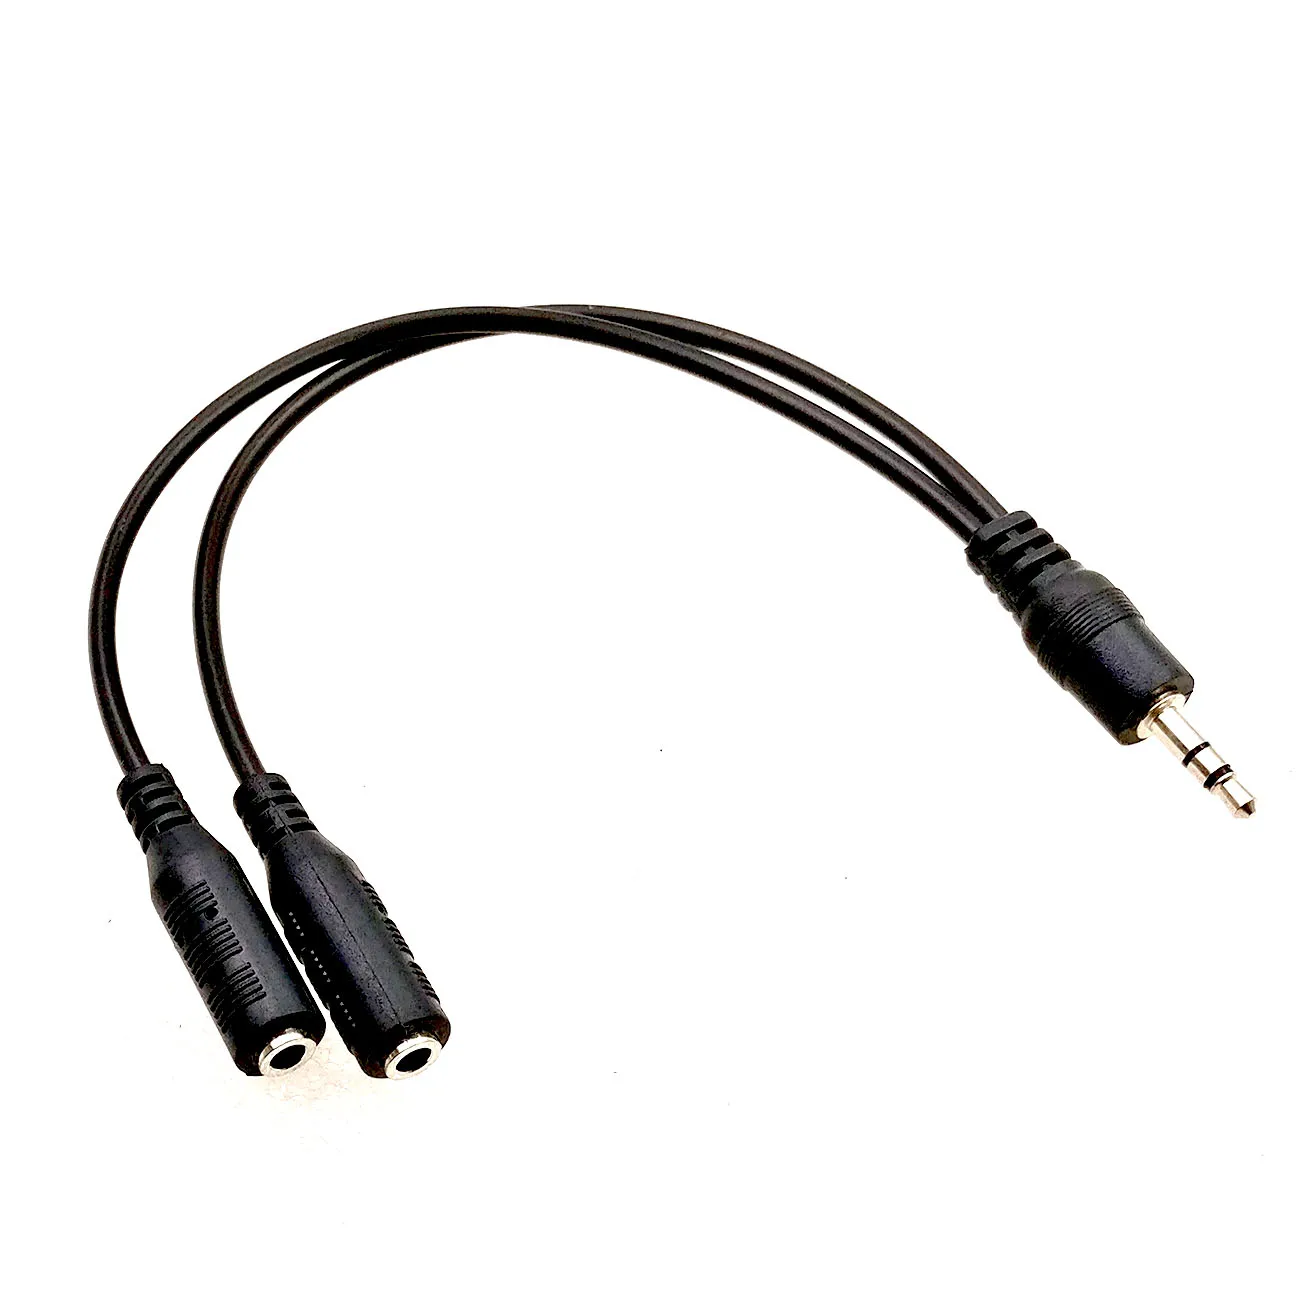 3,5 мм разъем 1 в 2 пары Sudio линия вкладыши гарнитура Y сплиттер кабель наушники адаптер для планшета телефон MP3 MP4